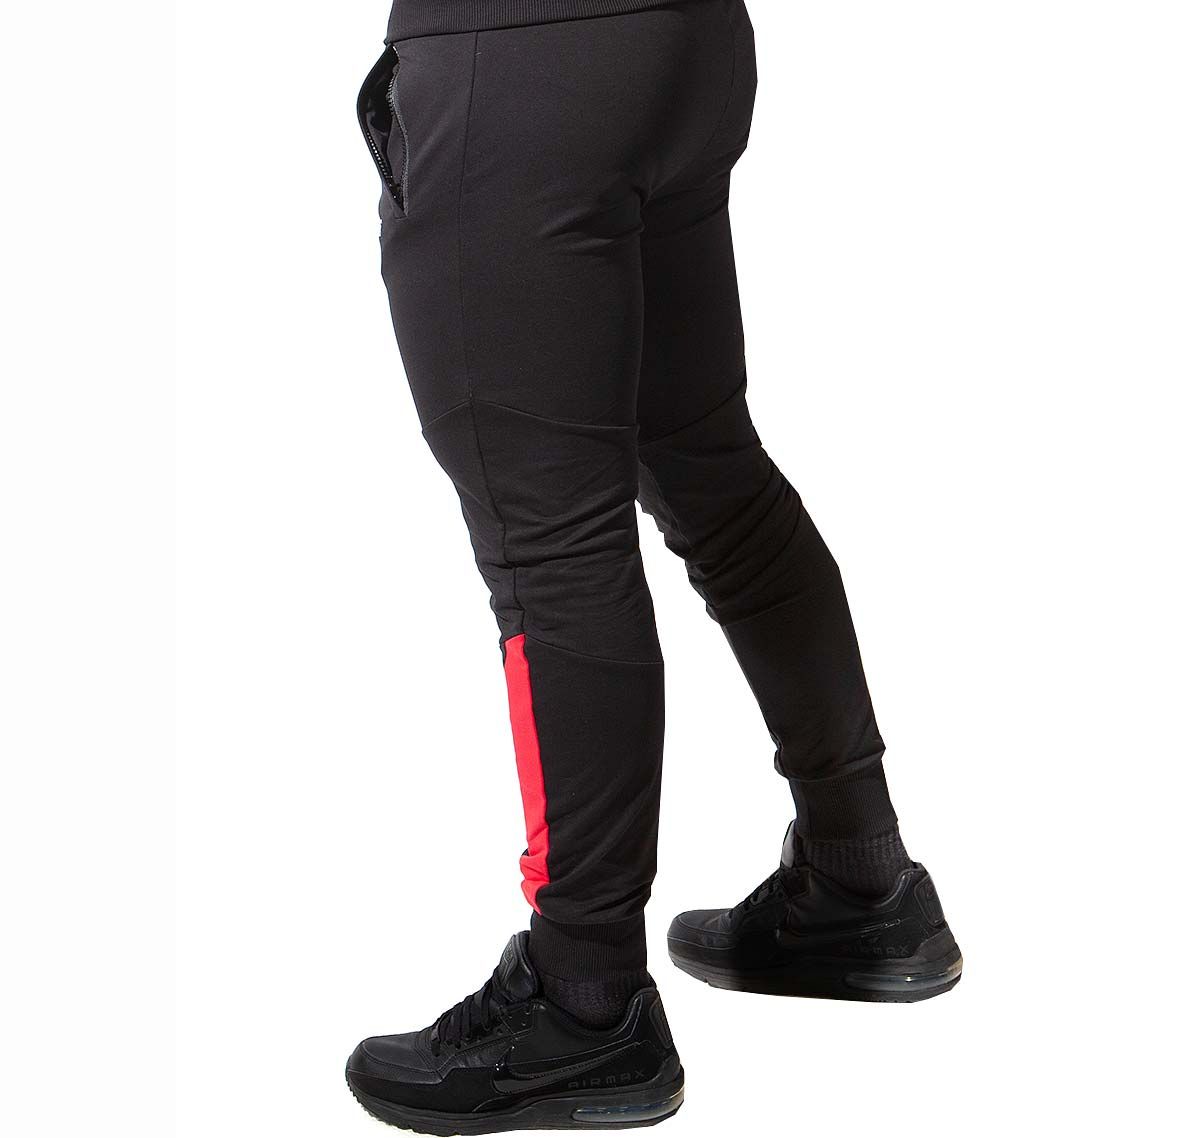 Alexander COBB Pantalon de sport PANTS BLACK RED, noir